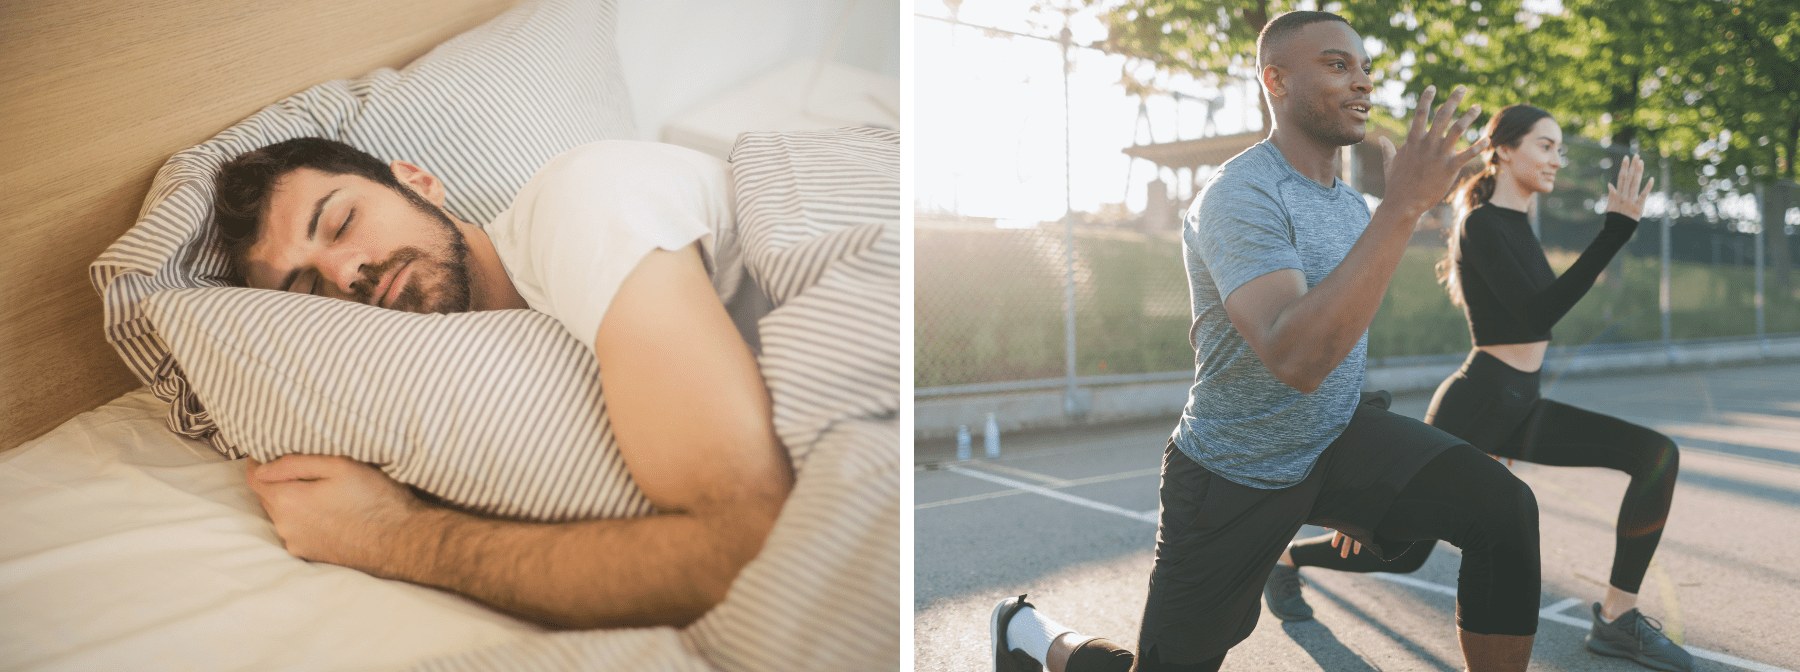 The Two-Way Relationship Between Sleep & Exercise